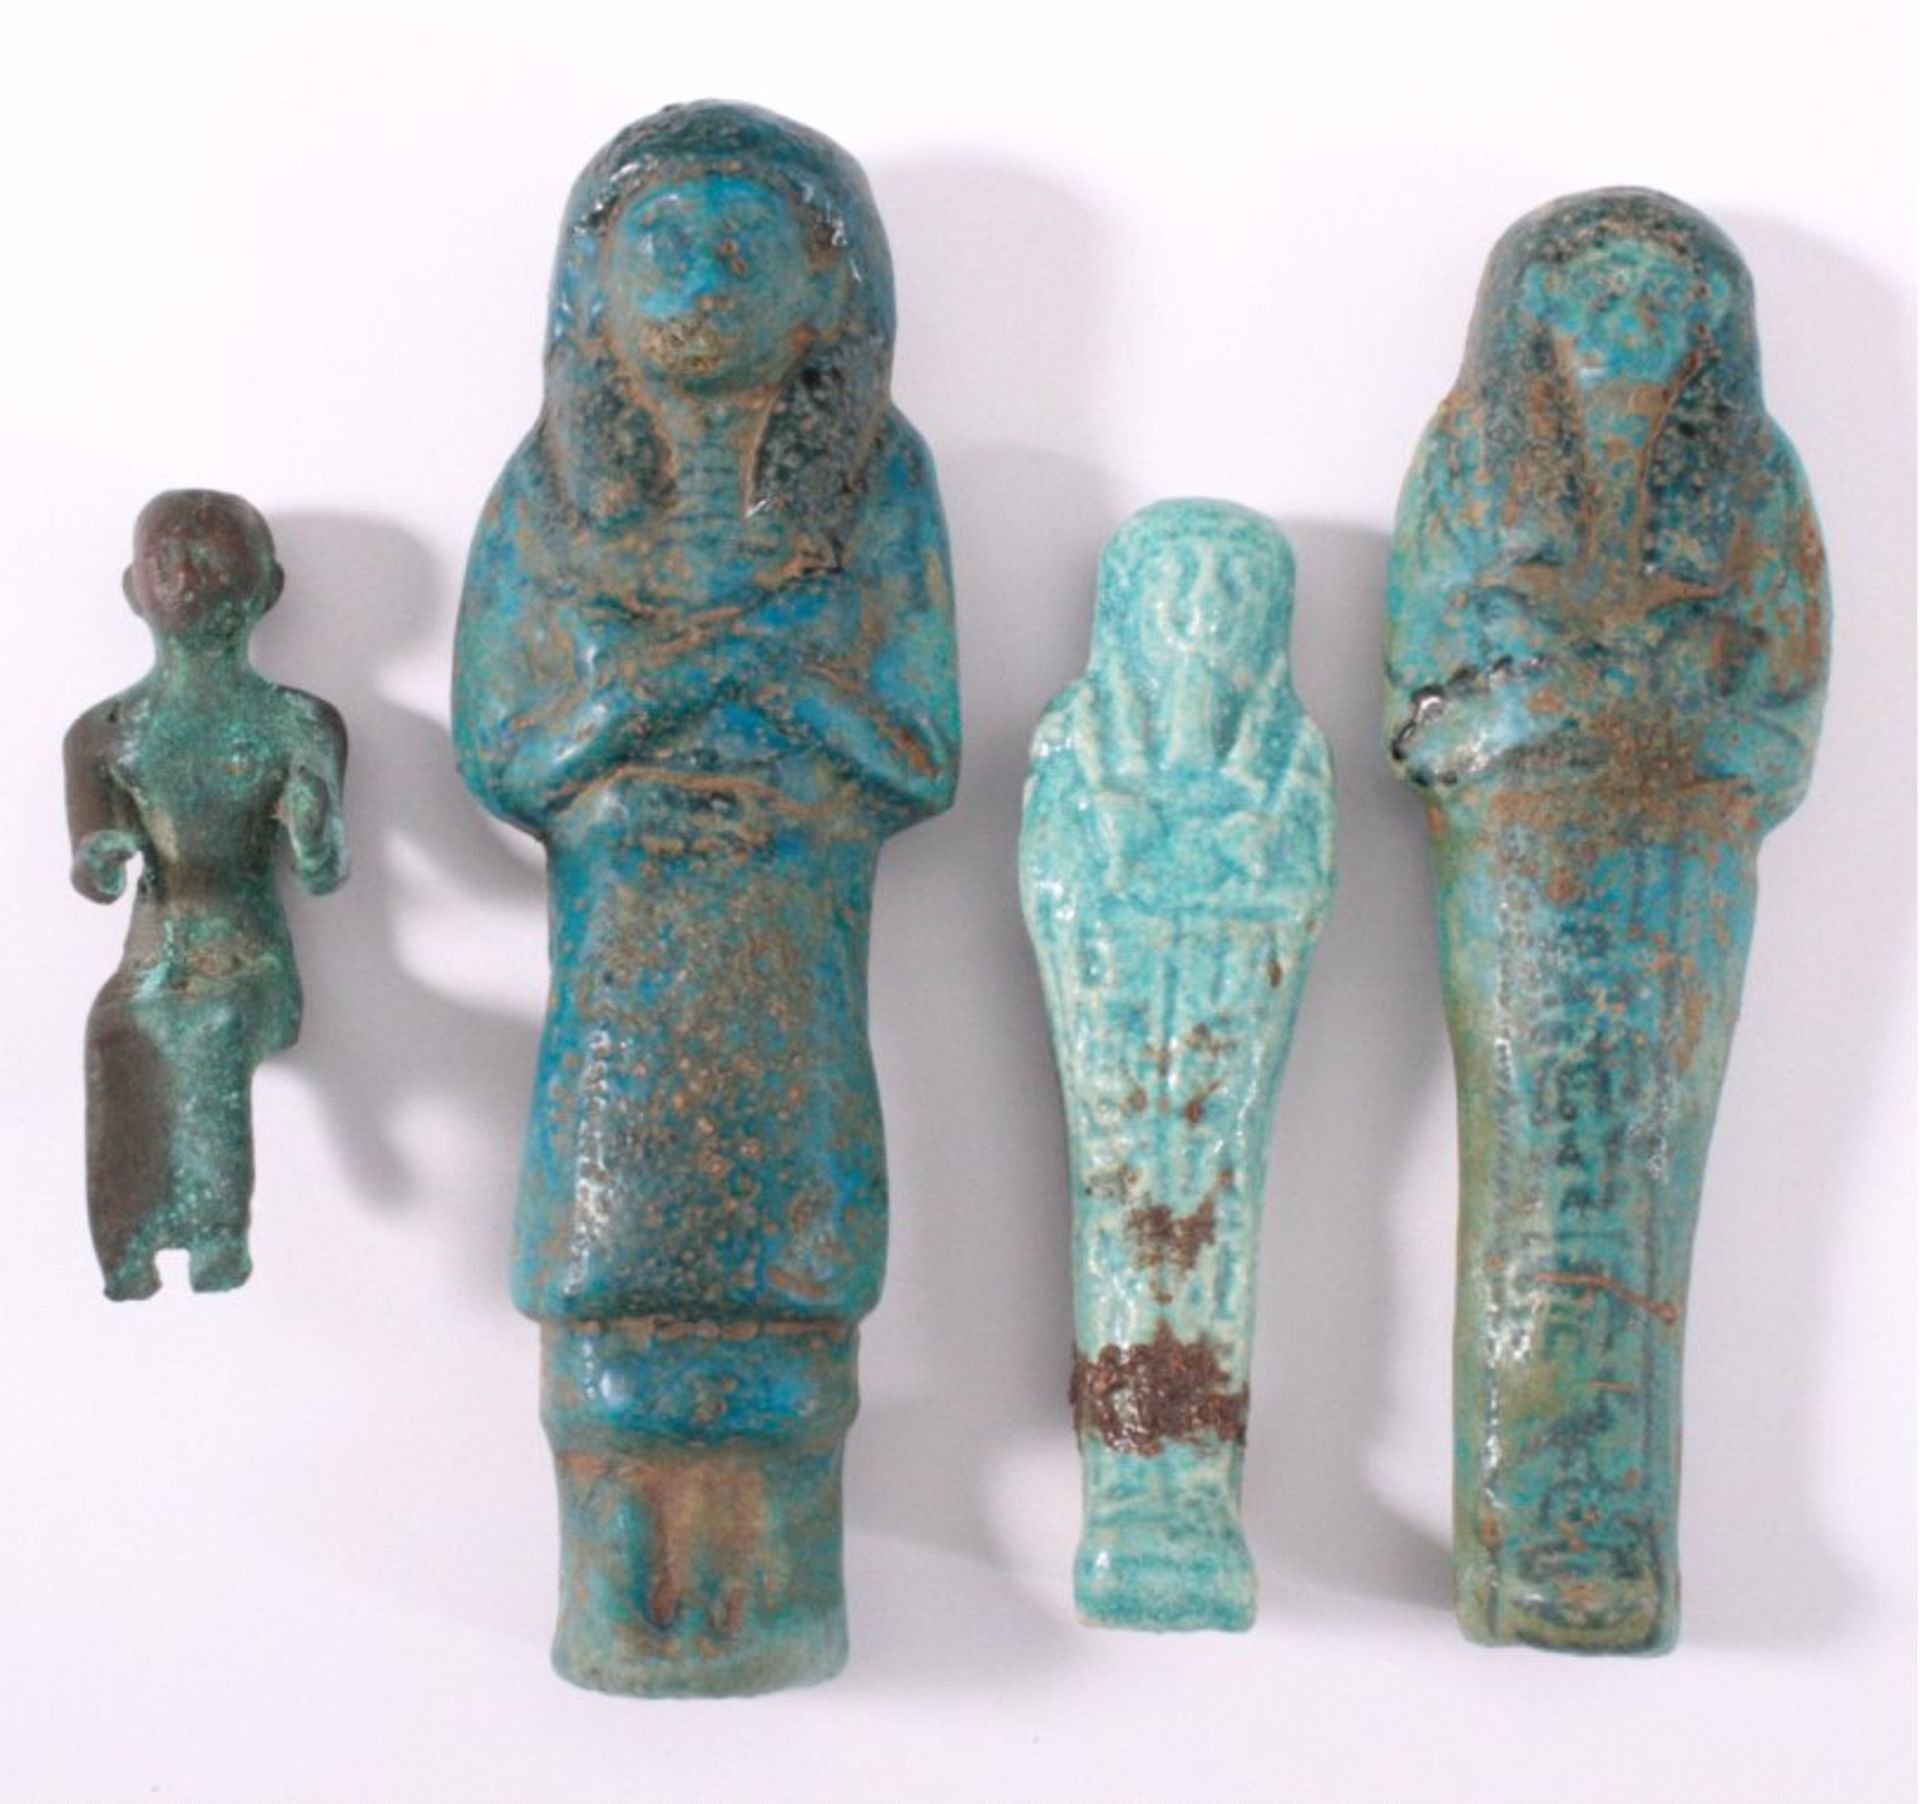 Konvolut Ägyptische Figuren1x aus Bronze mit grüner Verkrustung, ca. H. 8 cm.3x Shabti aus Ton mit